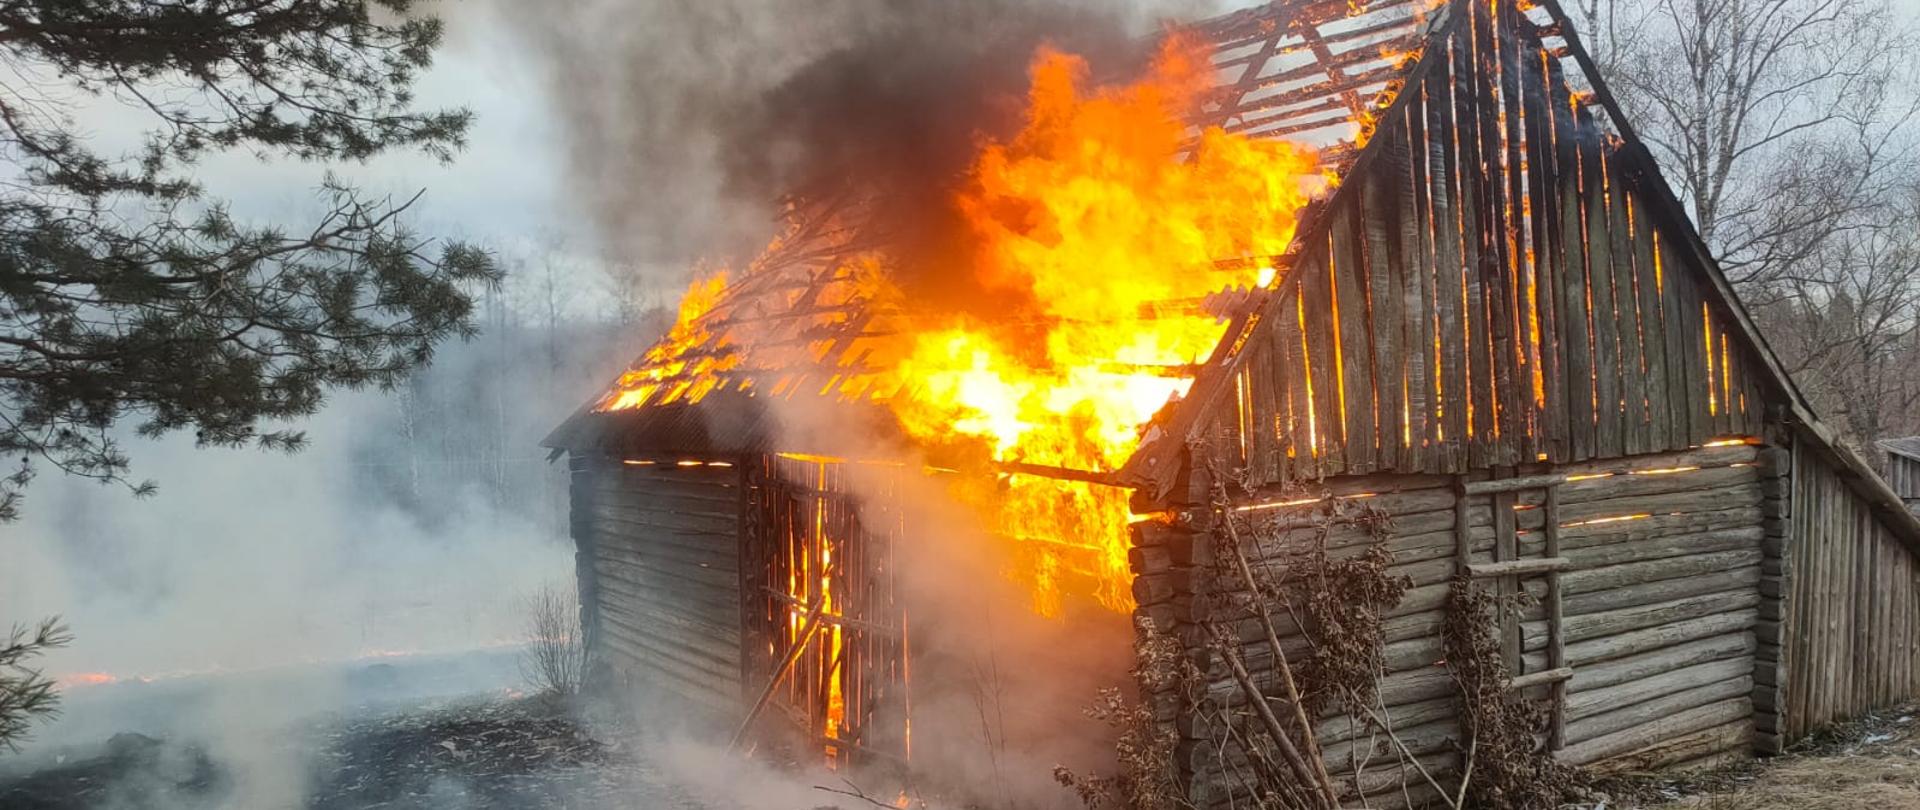 Pożar stodoły w Berżnikach